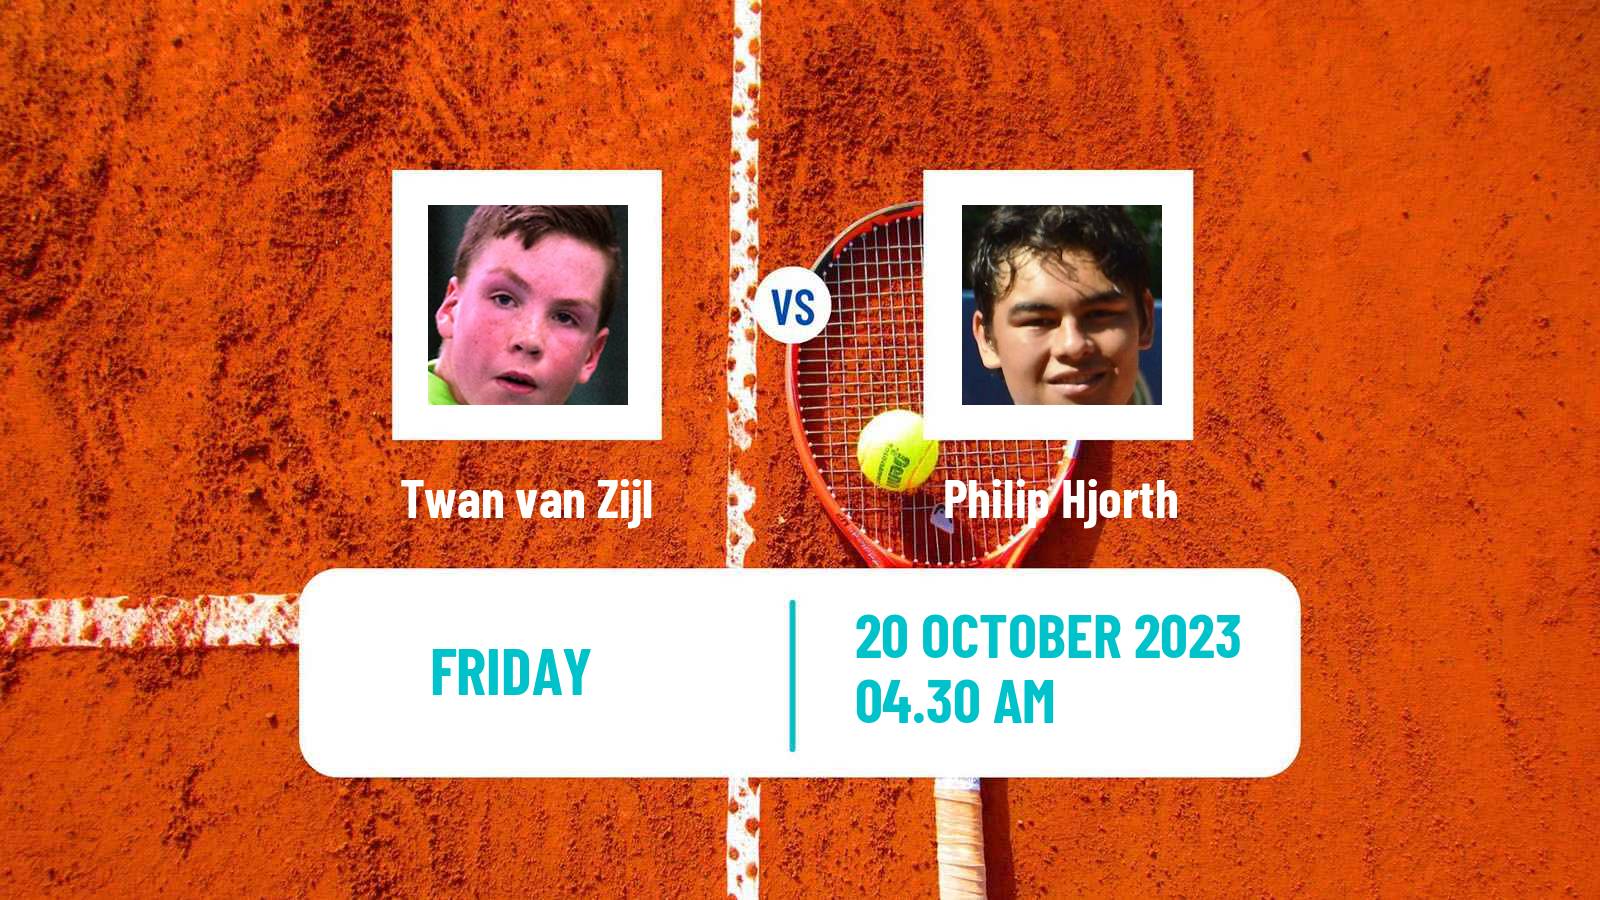 Tennis ITF M25 Tavira 2 Men Twan van Zijl - Philip Hjorth